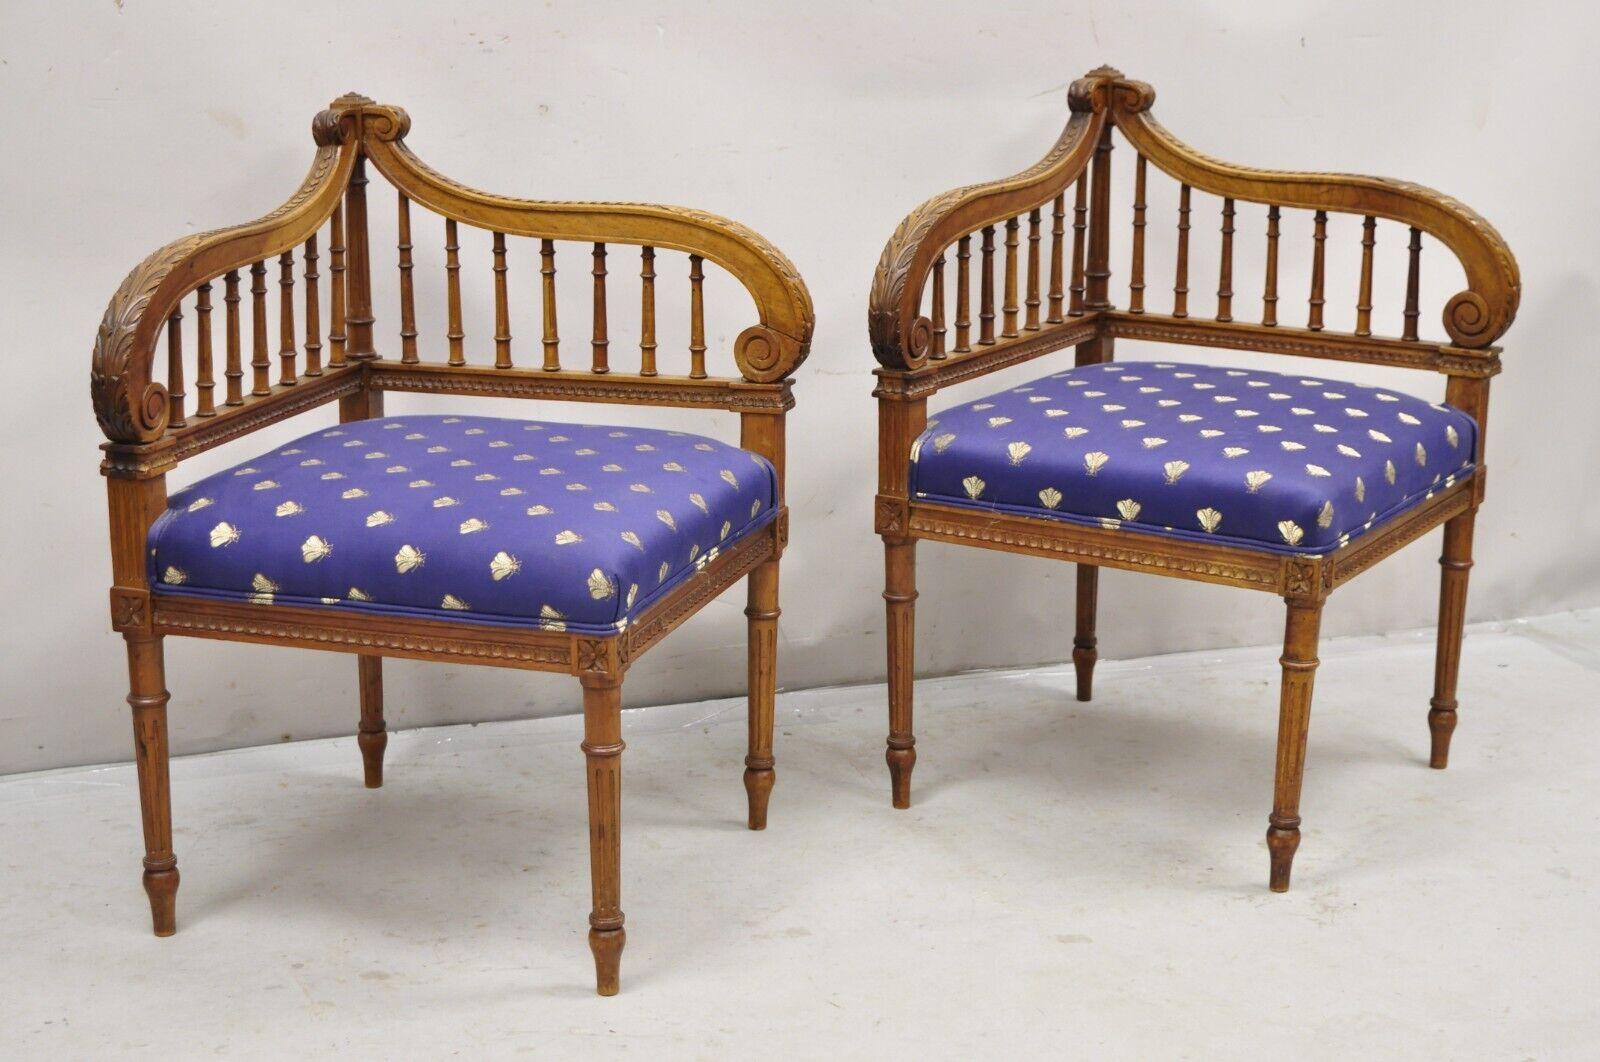 Anciennes chaises d'angle à harpe lyre en noyer sculpté de style Louis XVI - une paire. Assises tapissées bleues avec impression 